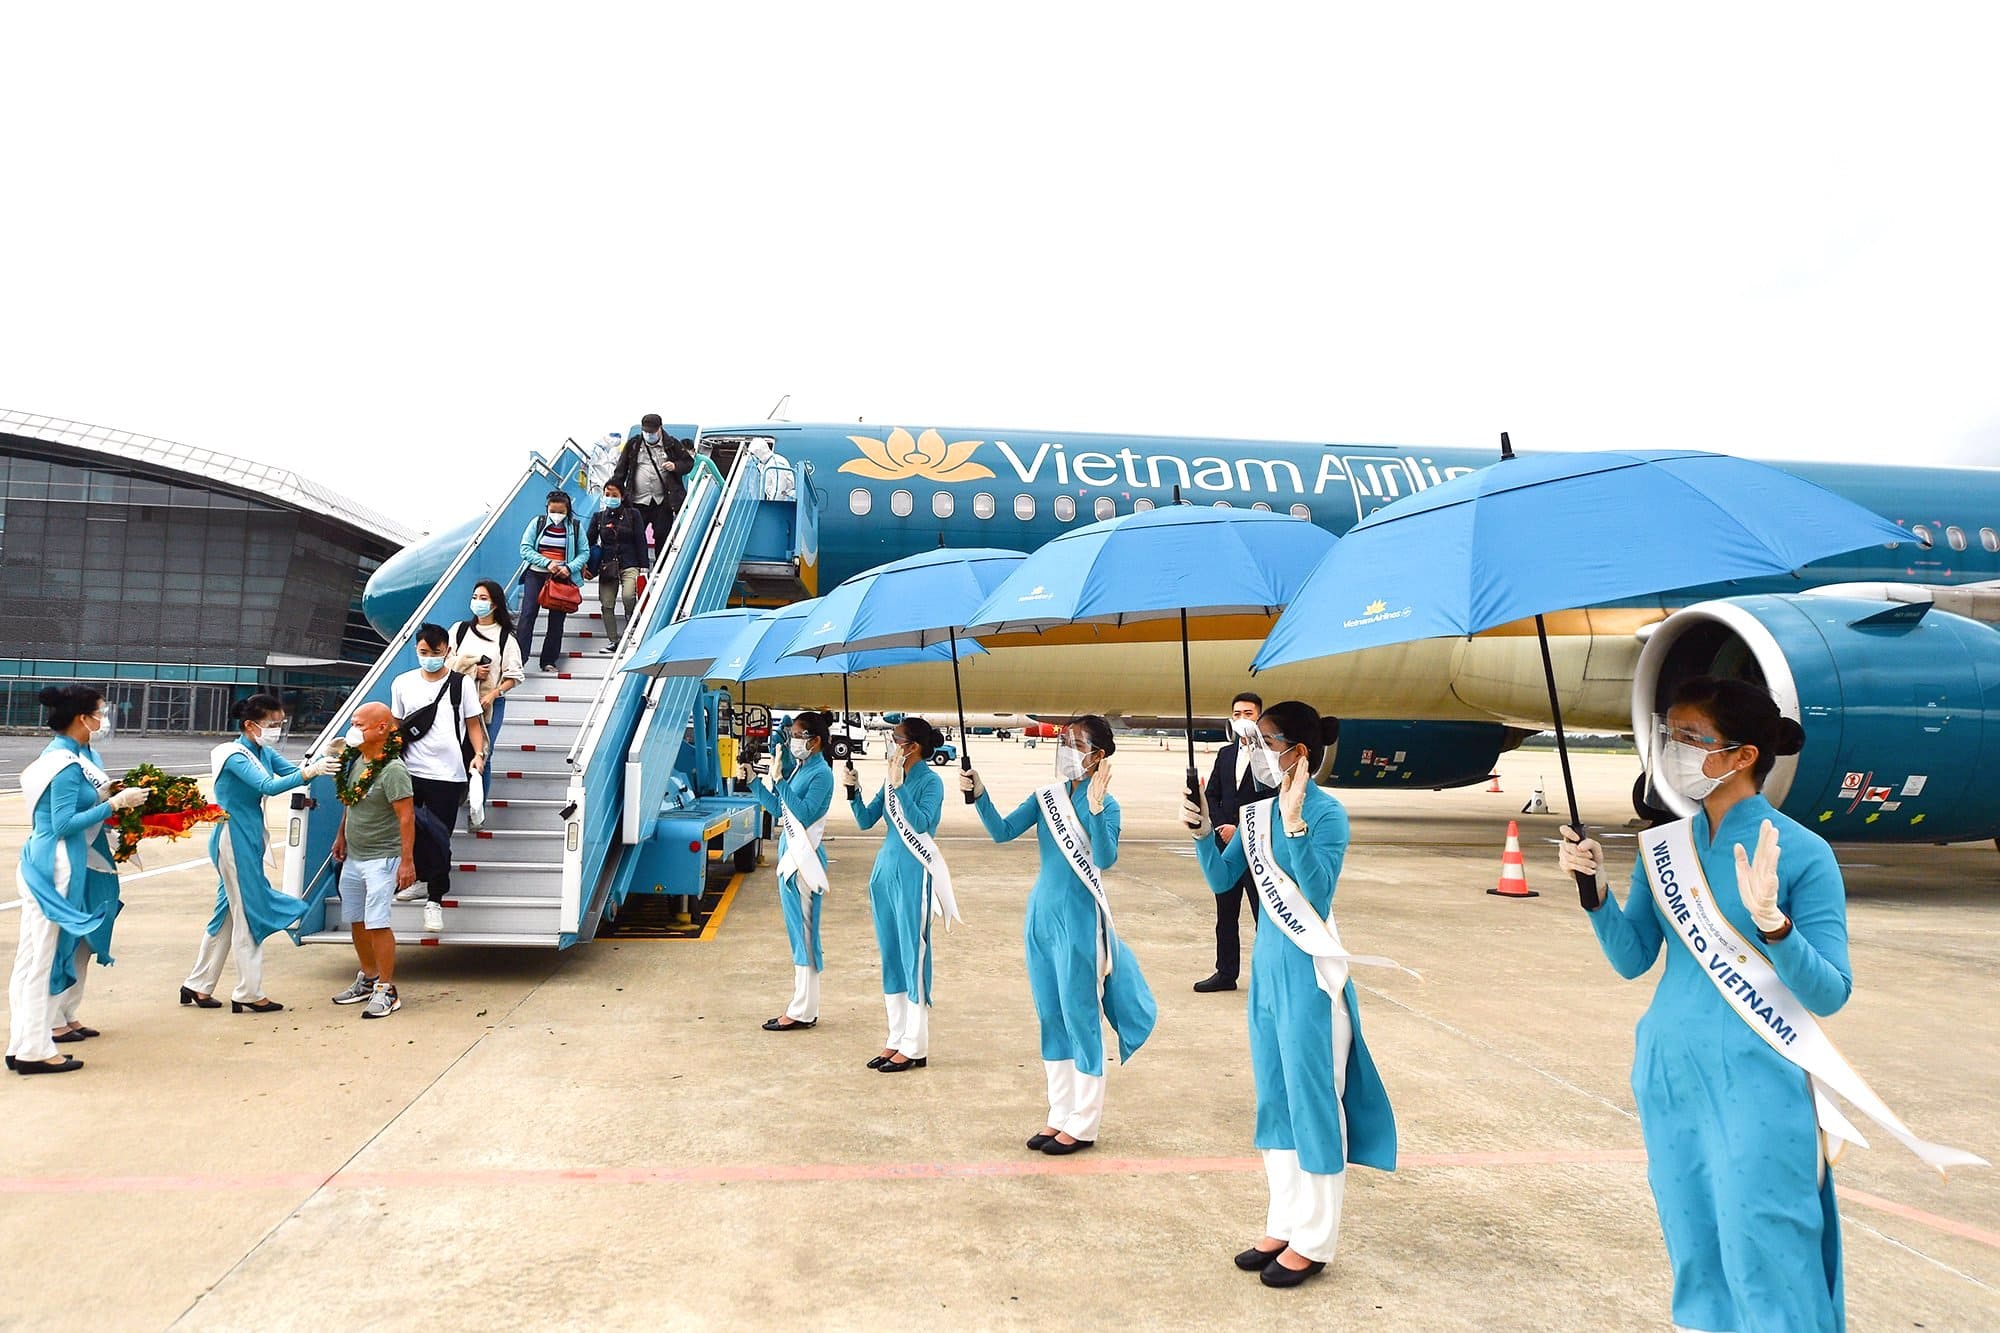 Sau khi hạ cánh, các du khách nước ngoài sẽ di chuyển đến 01 khách sạn ở Hội An (Quảng Nam). (Ảnh: VNA).